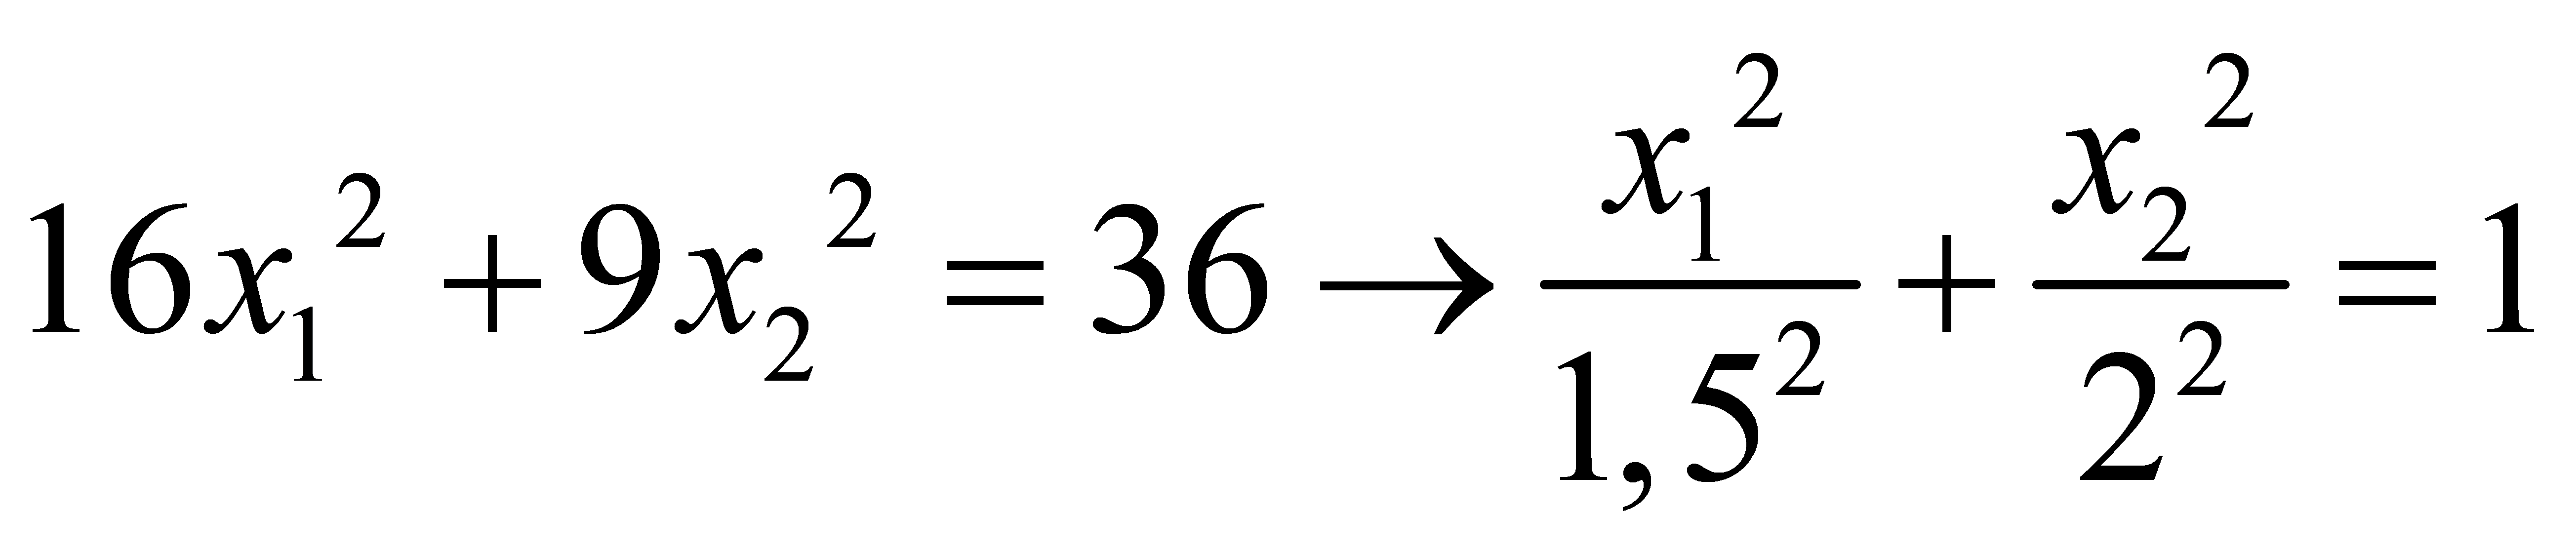 формула маклорена с остаточным членов в форме пеано фото 50